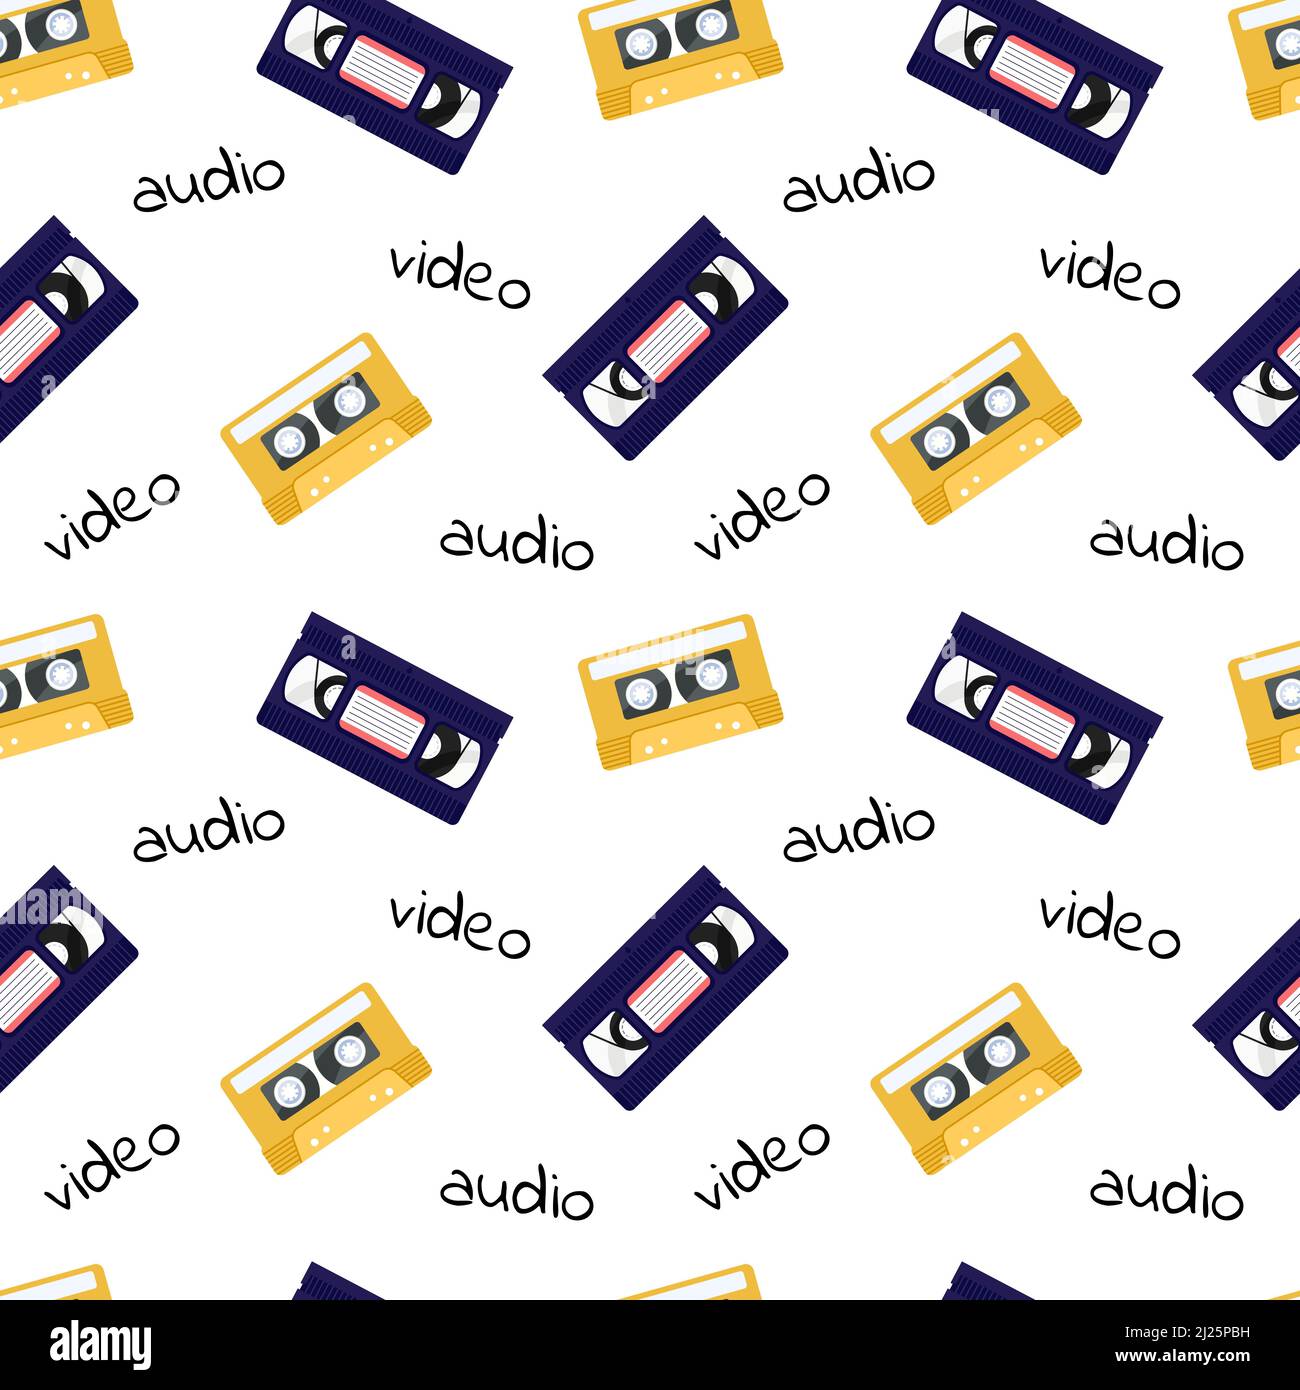 90s Muster. Nahtloser Retro-Hintergrund mit Video- und Audiobändern. VHS-Kassetten. Vektor flache Illustration für Designs, Hintergrund, Textil, Stoff. Stock Vektor